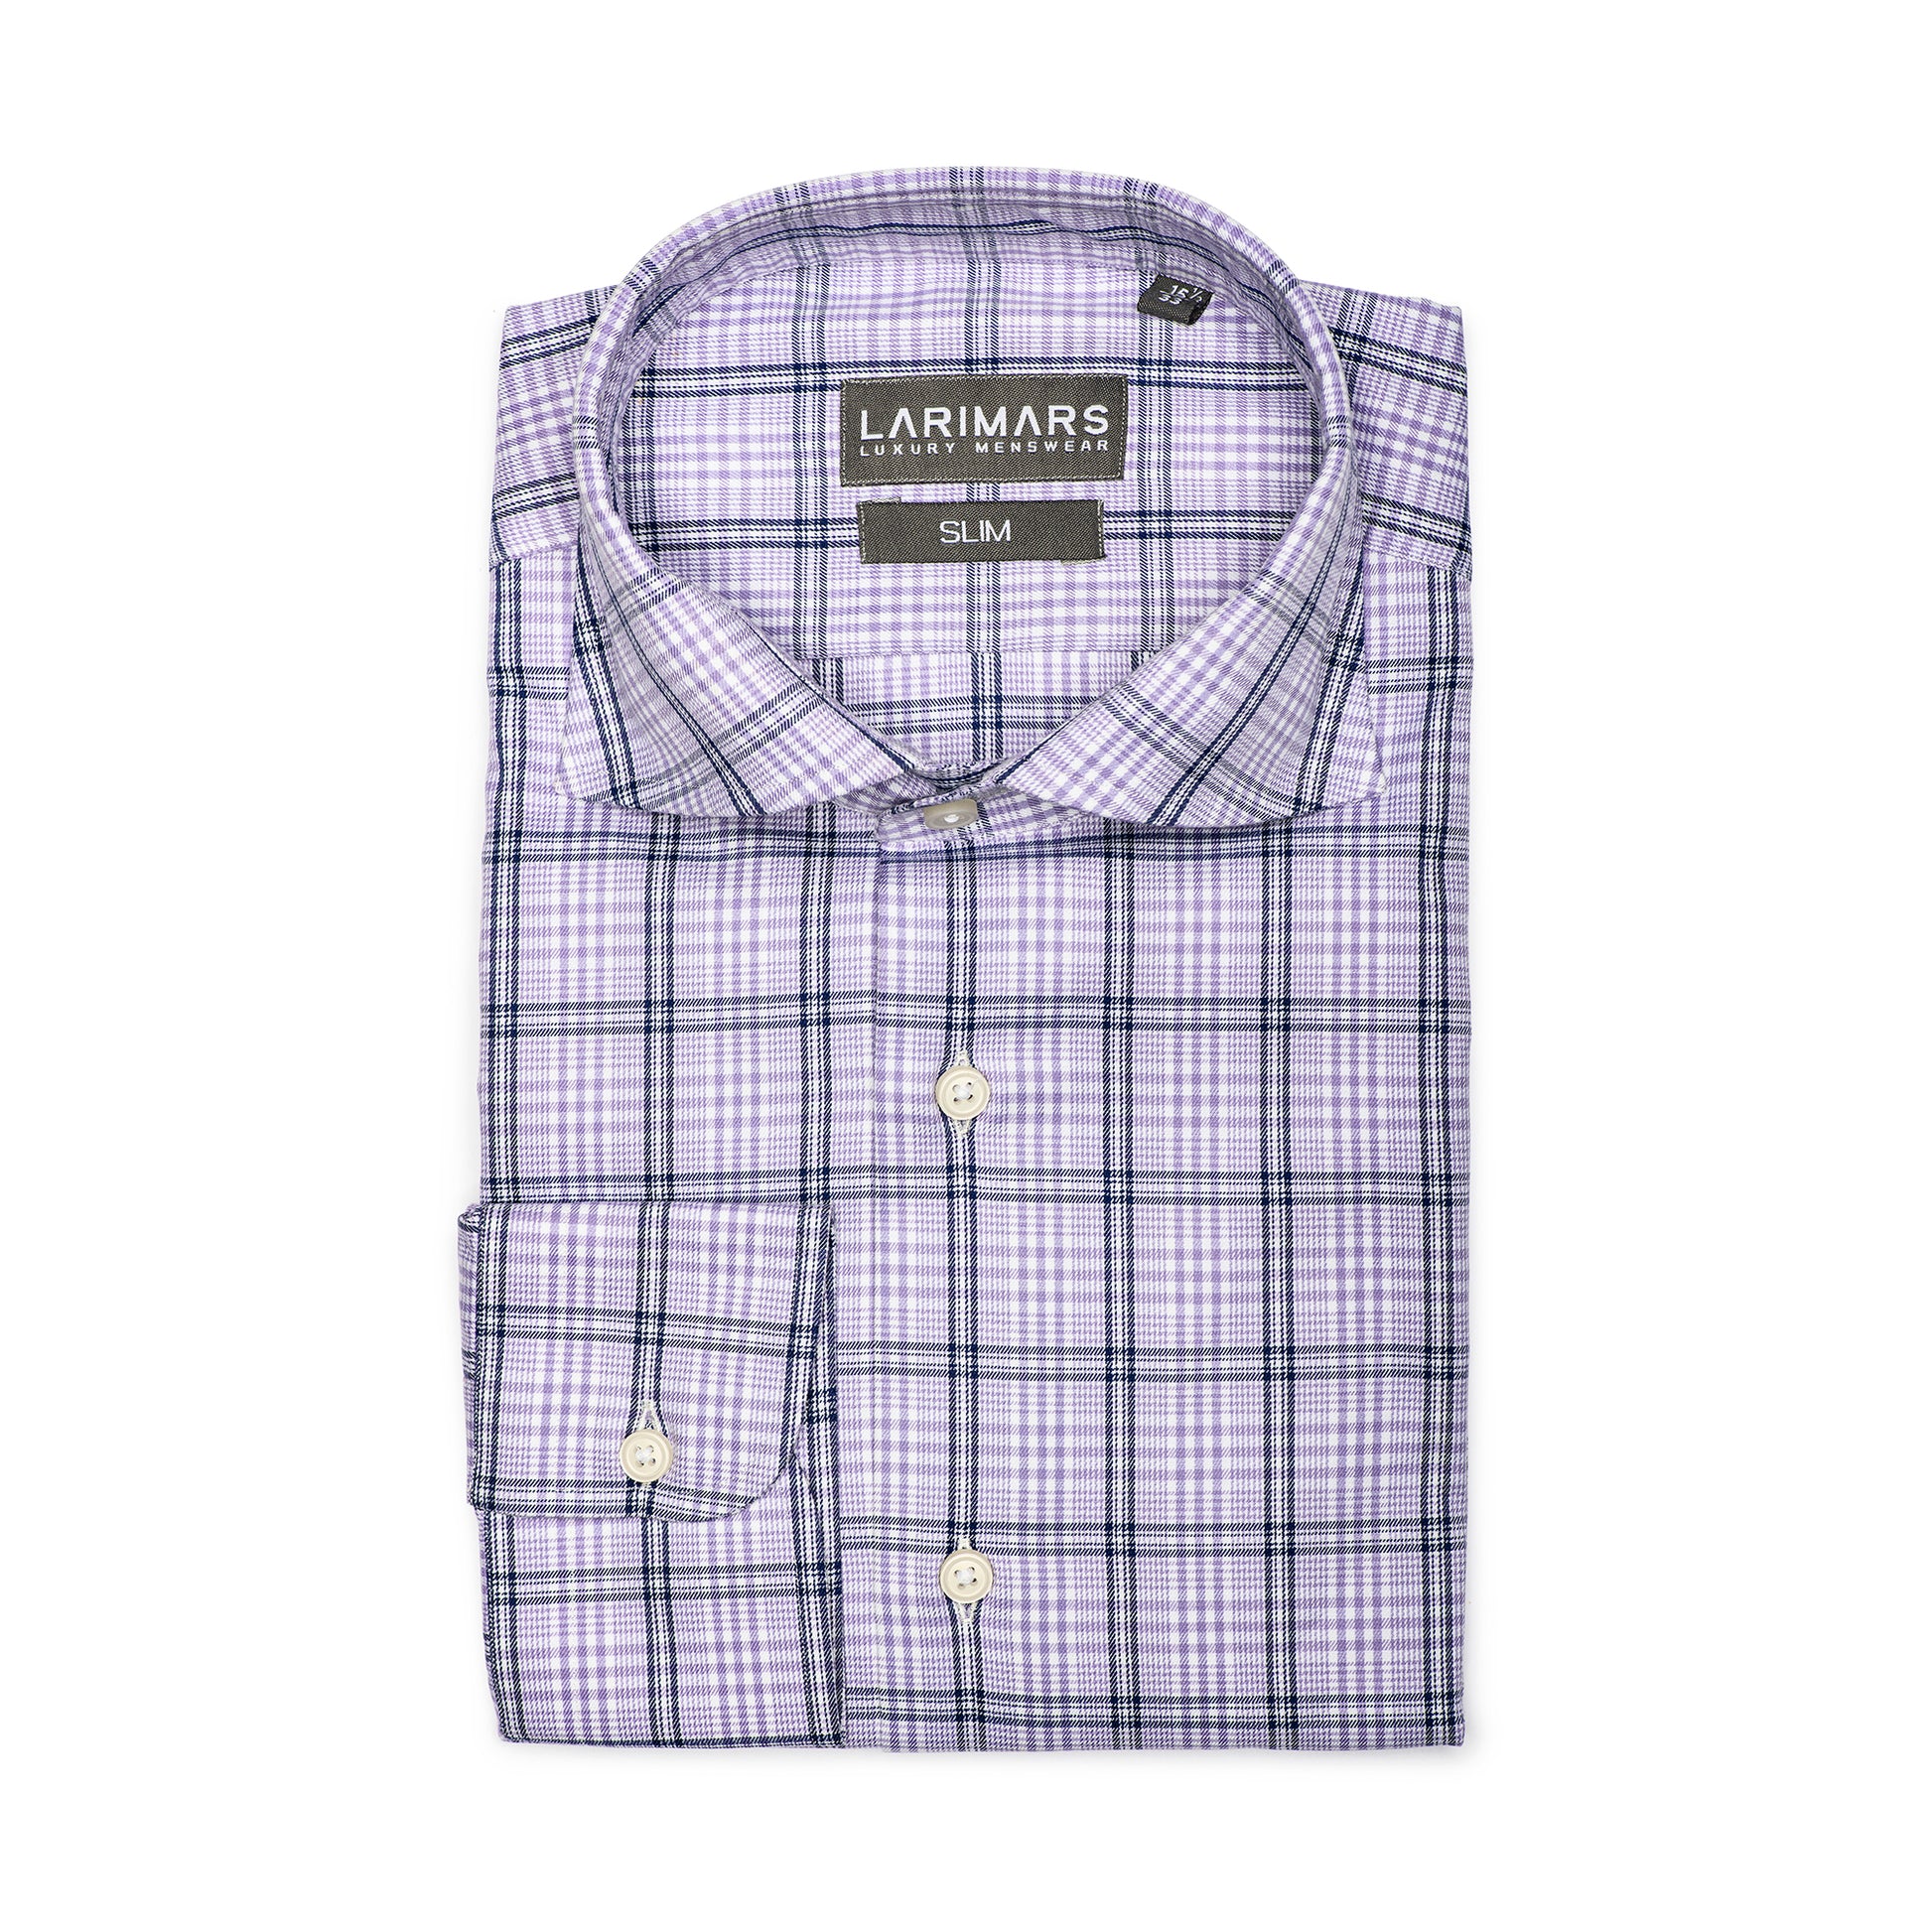 Purple Large Check Cotton Shirt for Men.